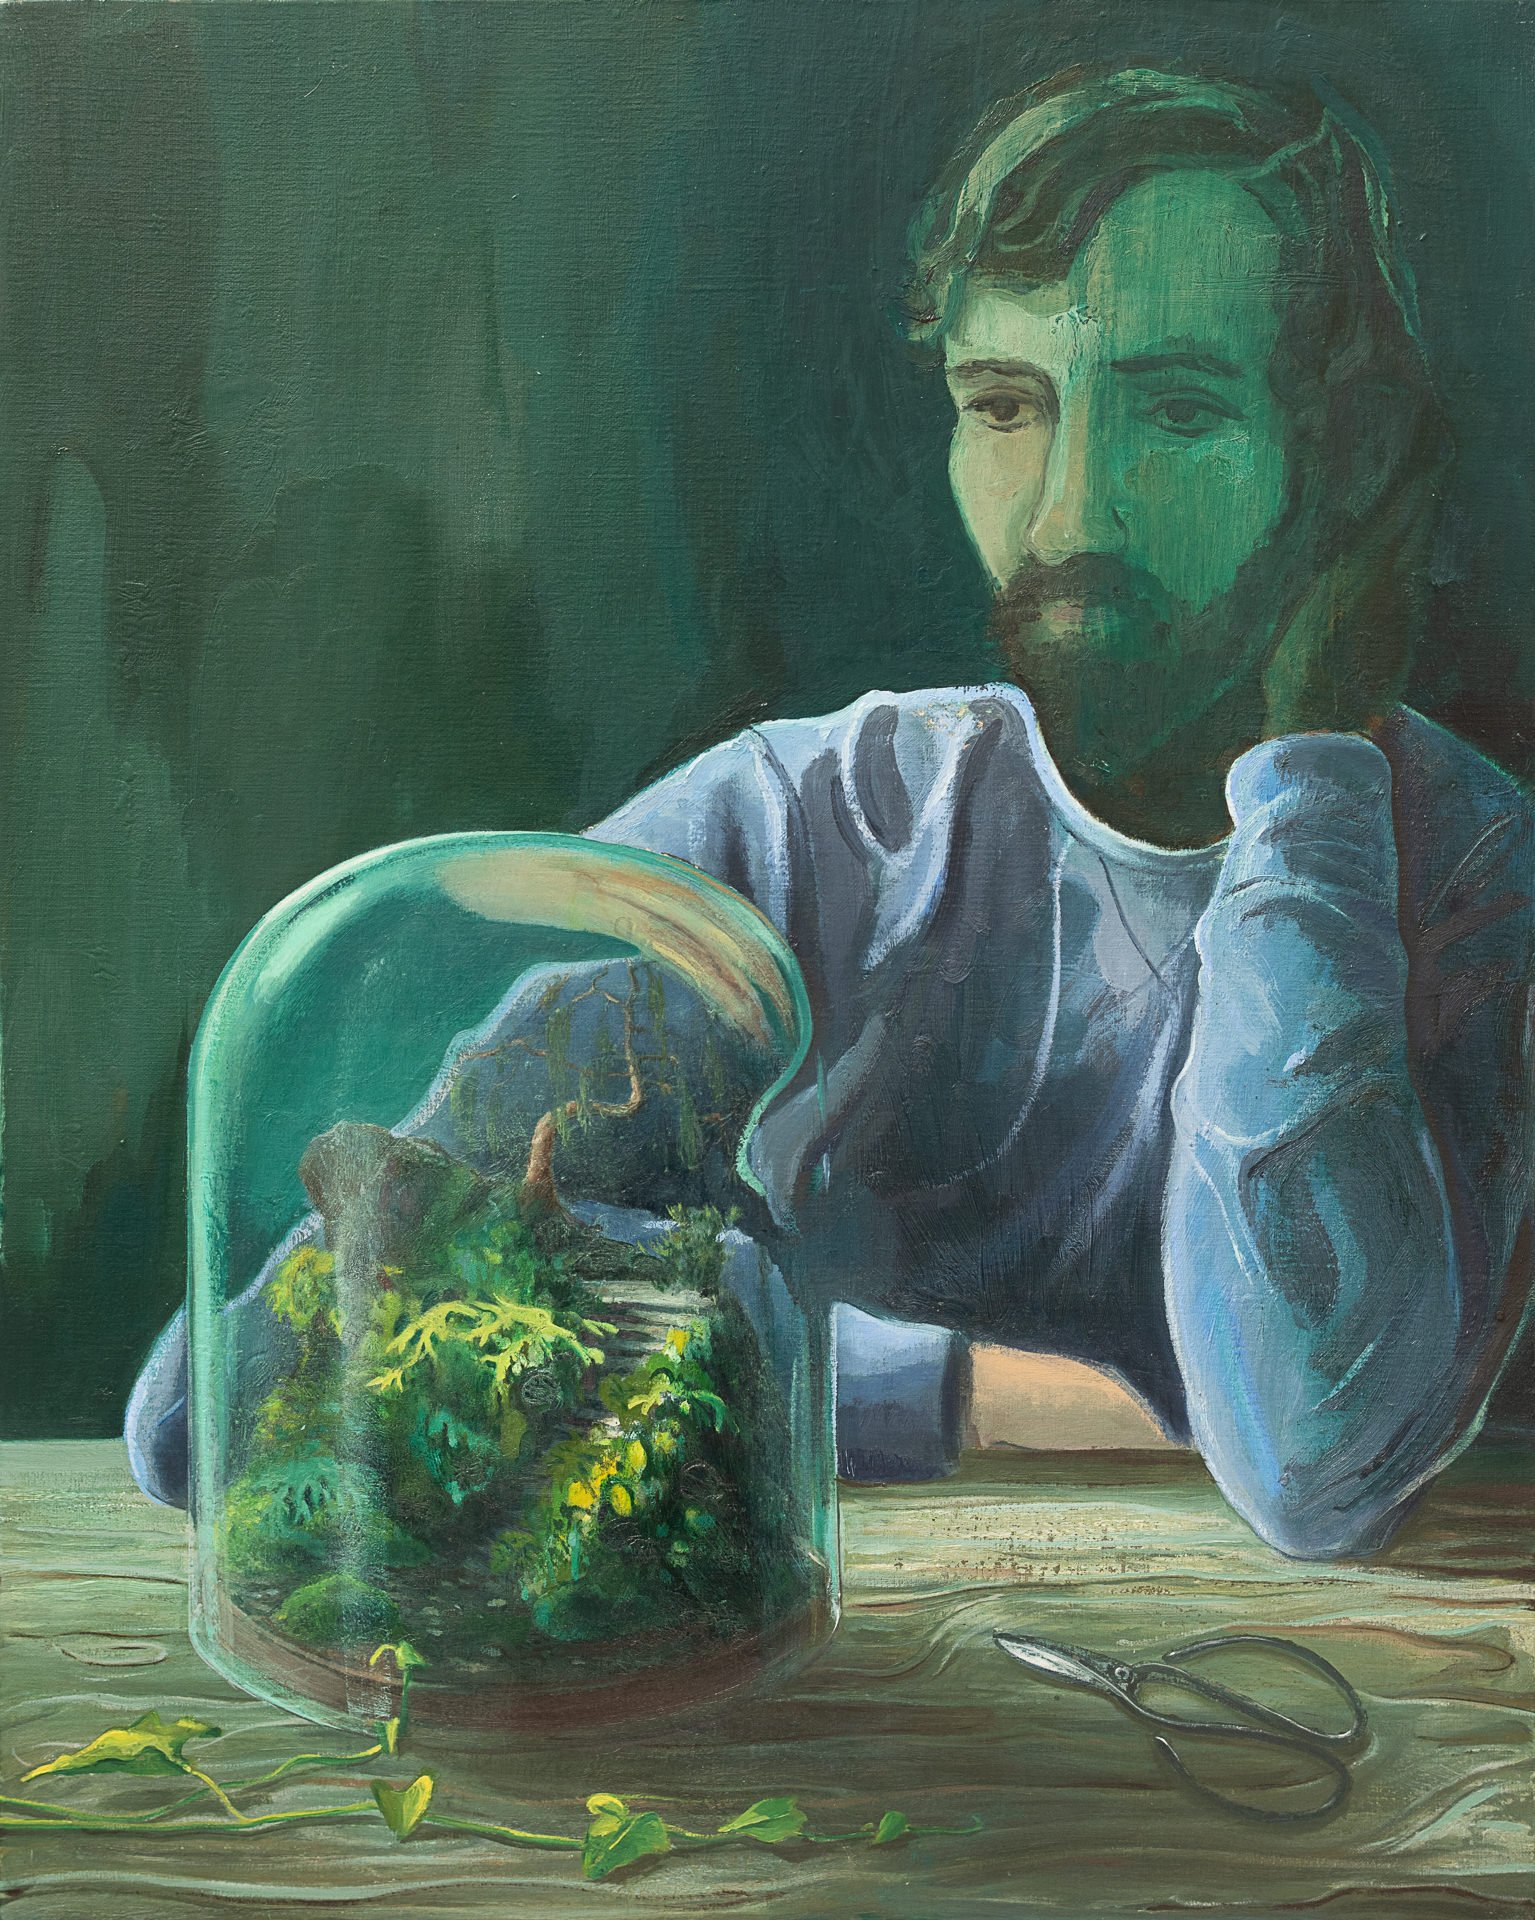 Gardener, 2021, 76cm x 61cm, oil on canvas.